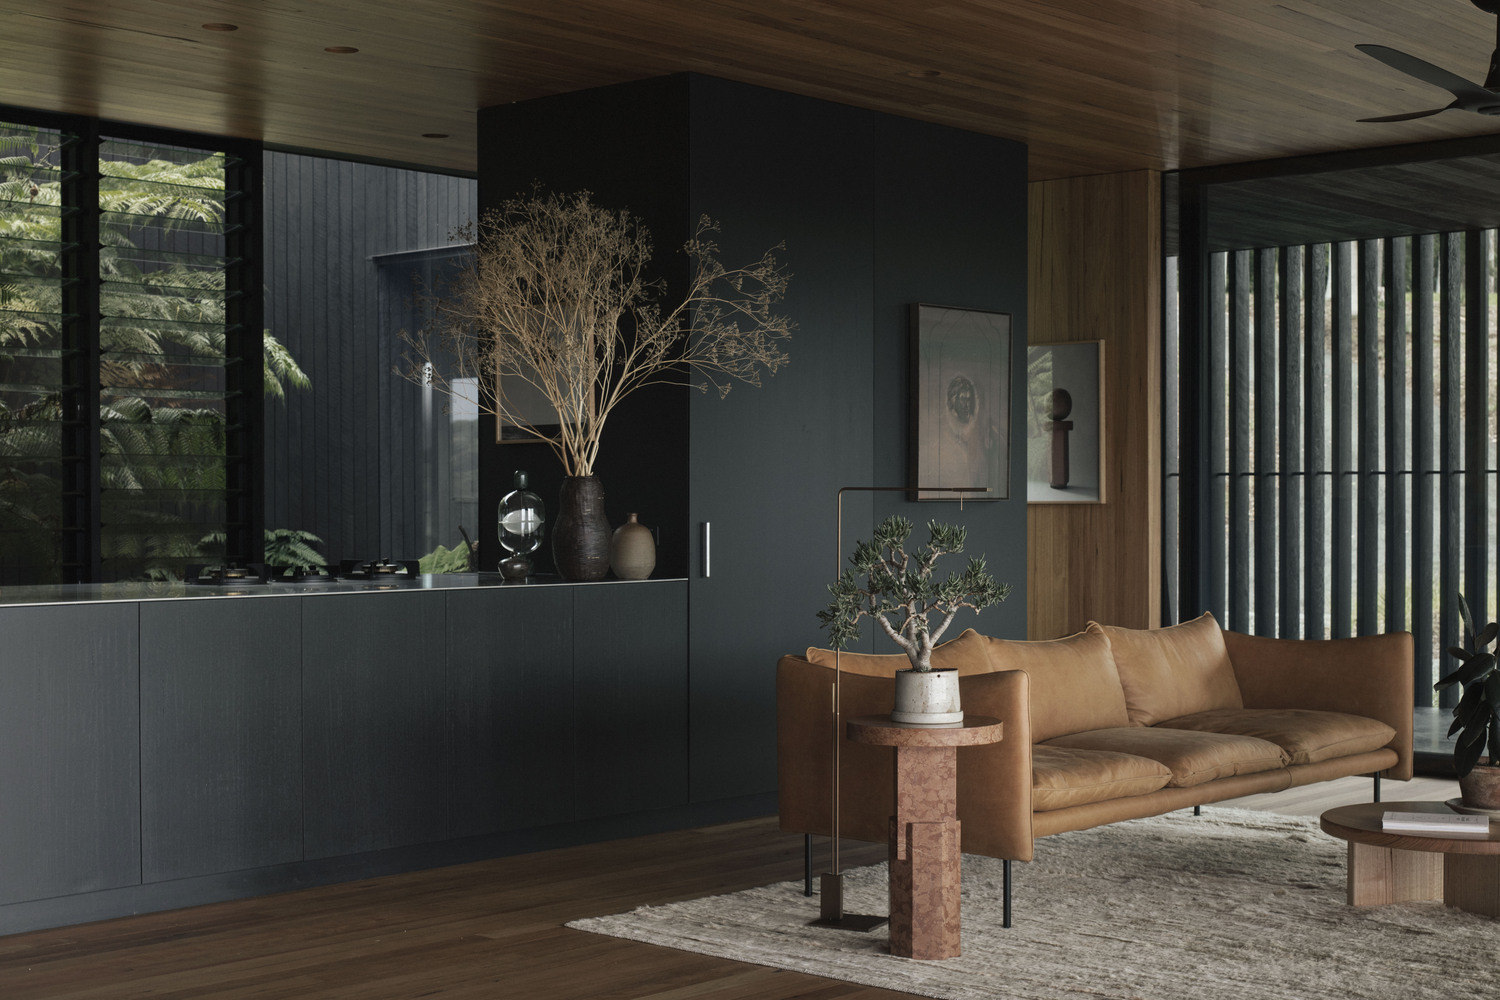 Sofa phòng khách lựa chọn vật liệu da lộn màu nâu hài hòa với trần và sàn gỗ xung quanh. Bên cạnh là chậu cảnh bonsai nghệ thuật theo phong cách Nhật Bản.